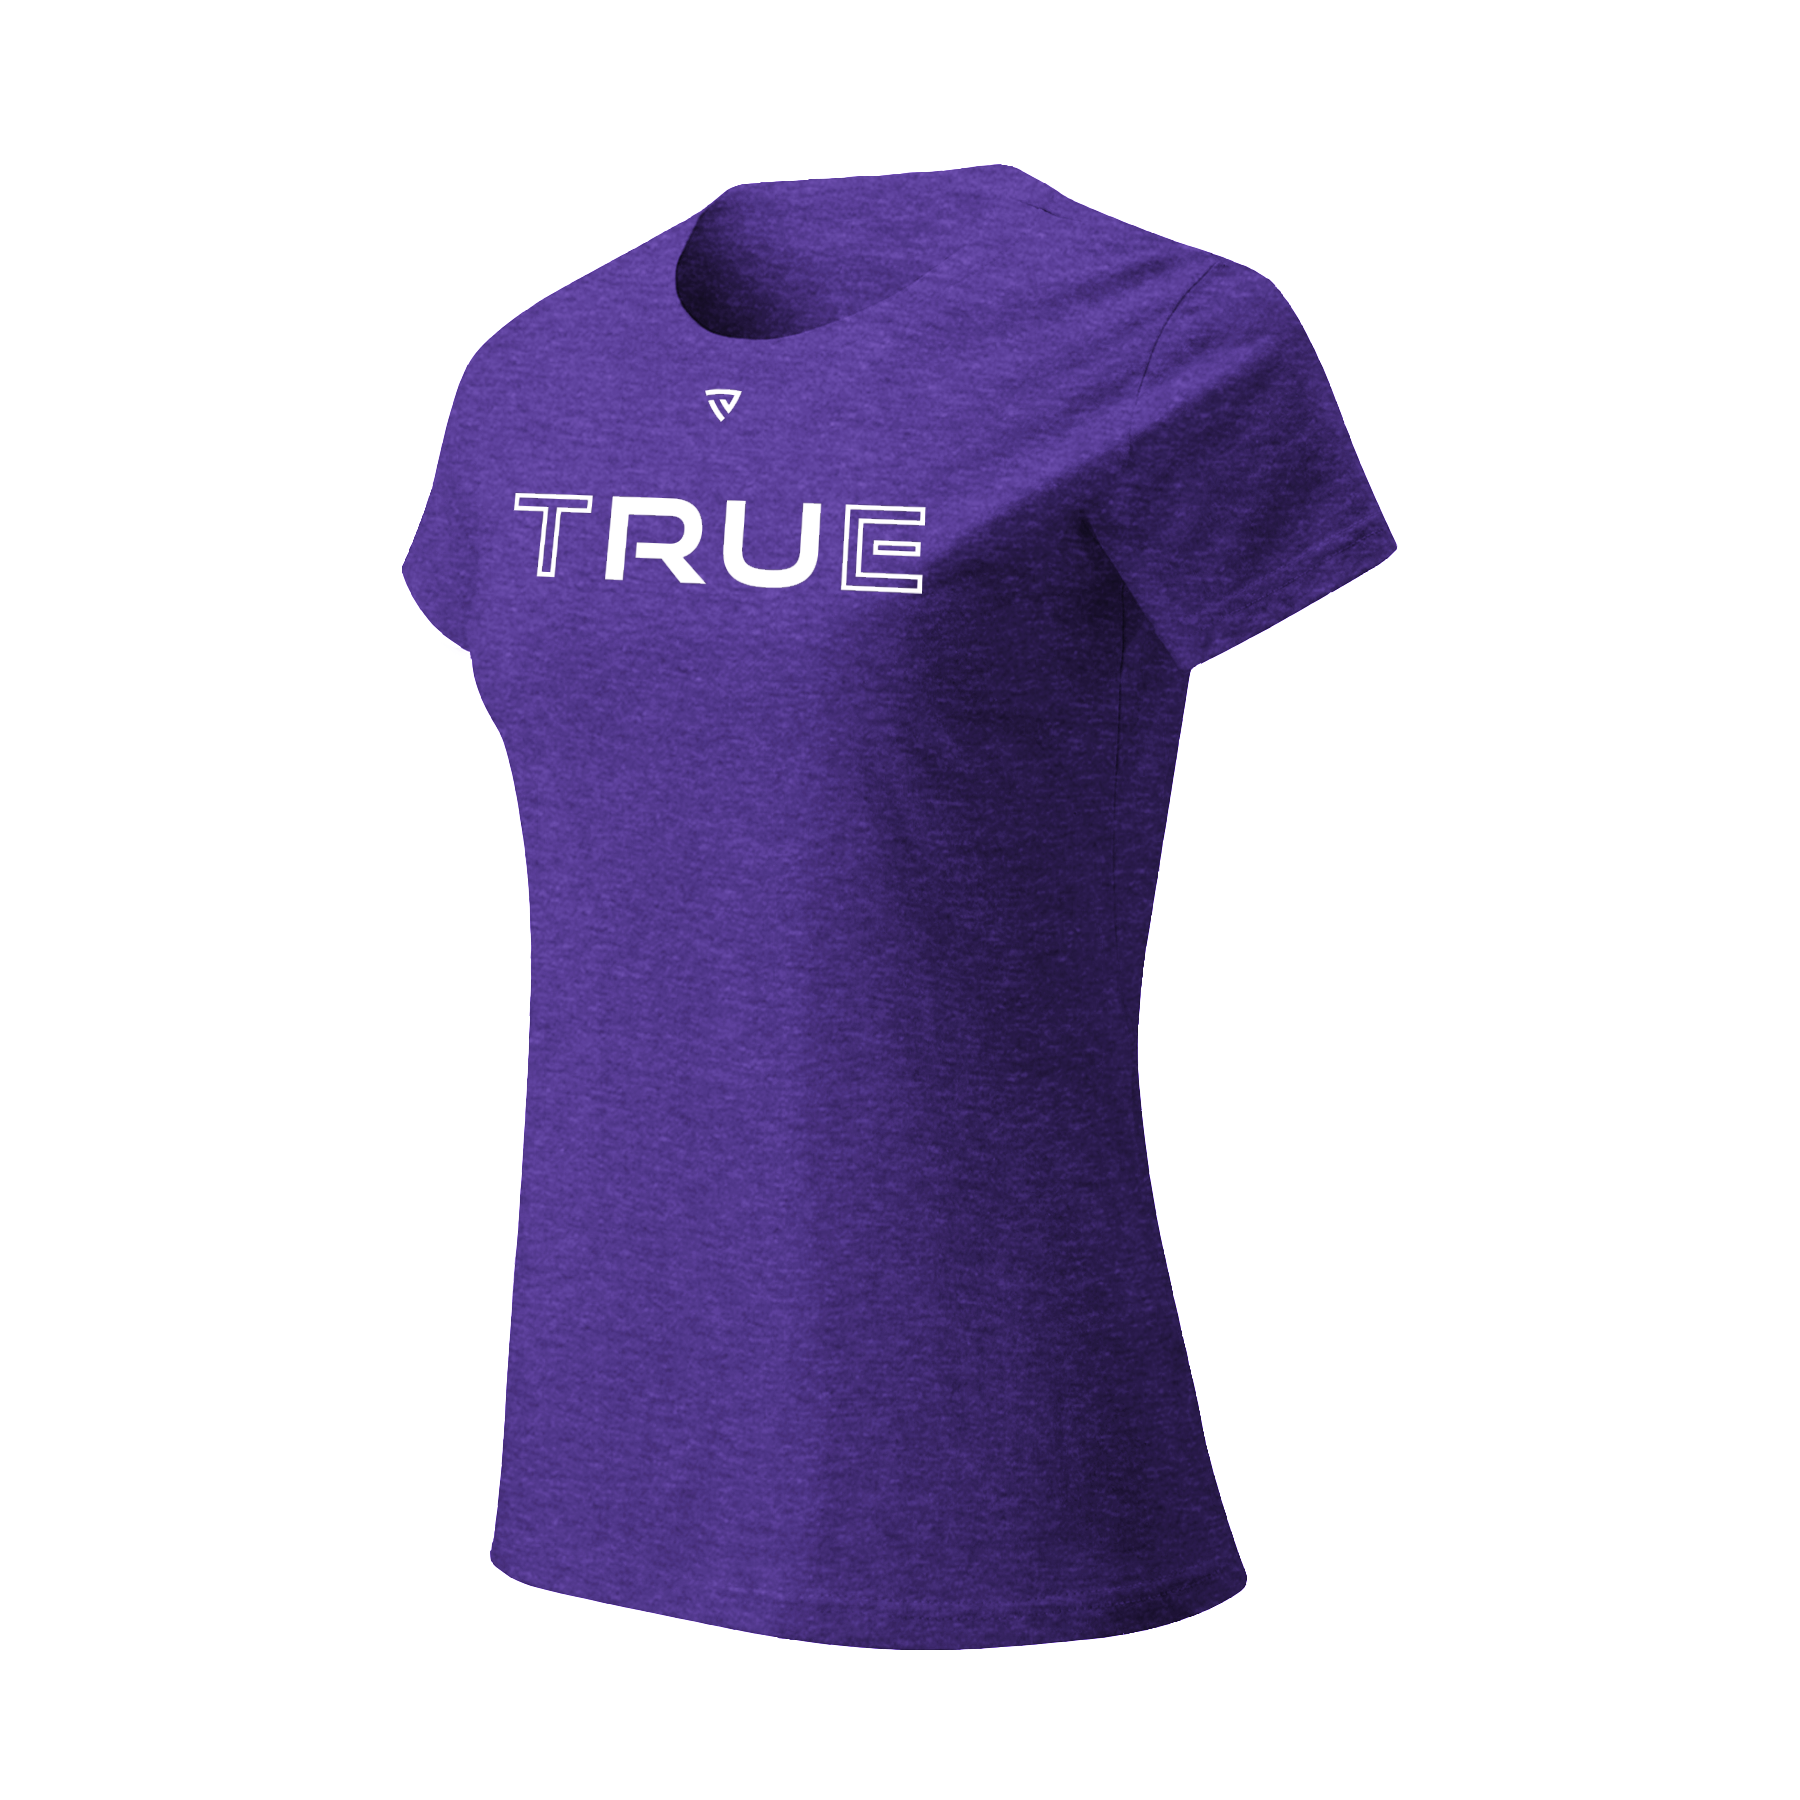 Women's RU TRUE Purple Tee